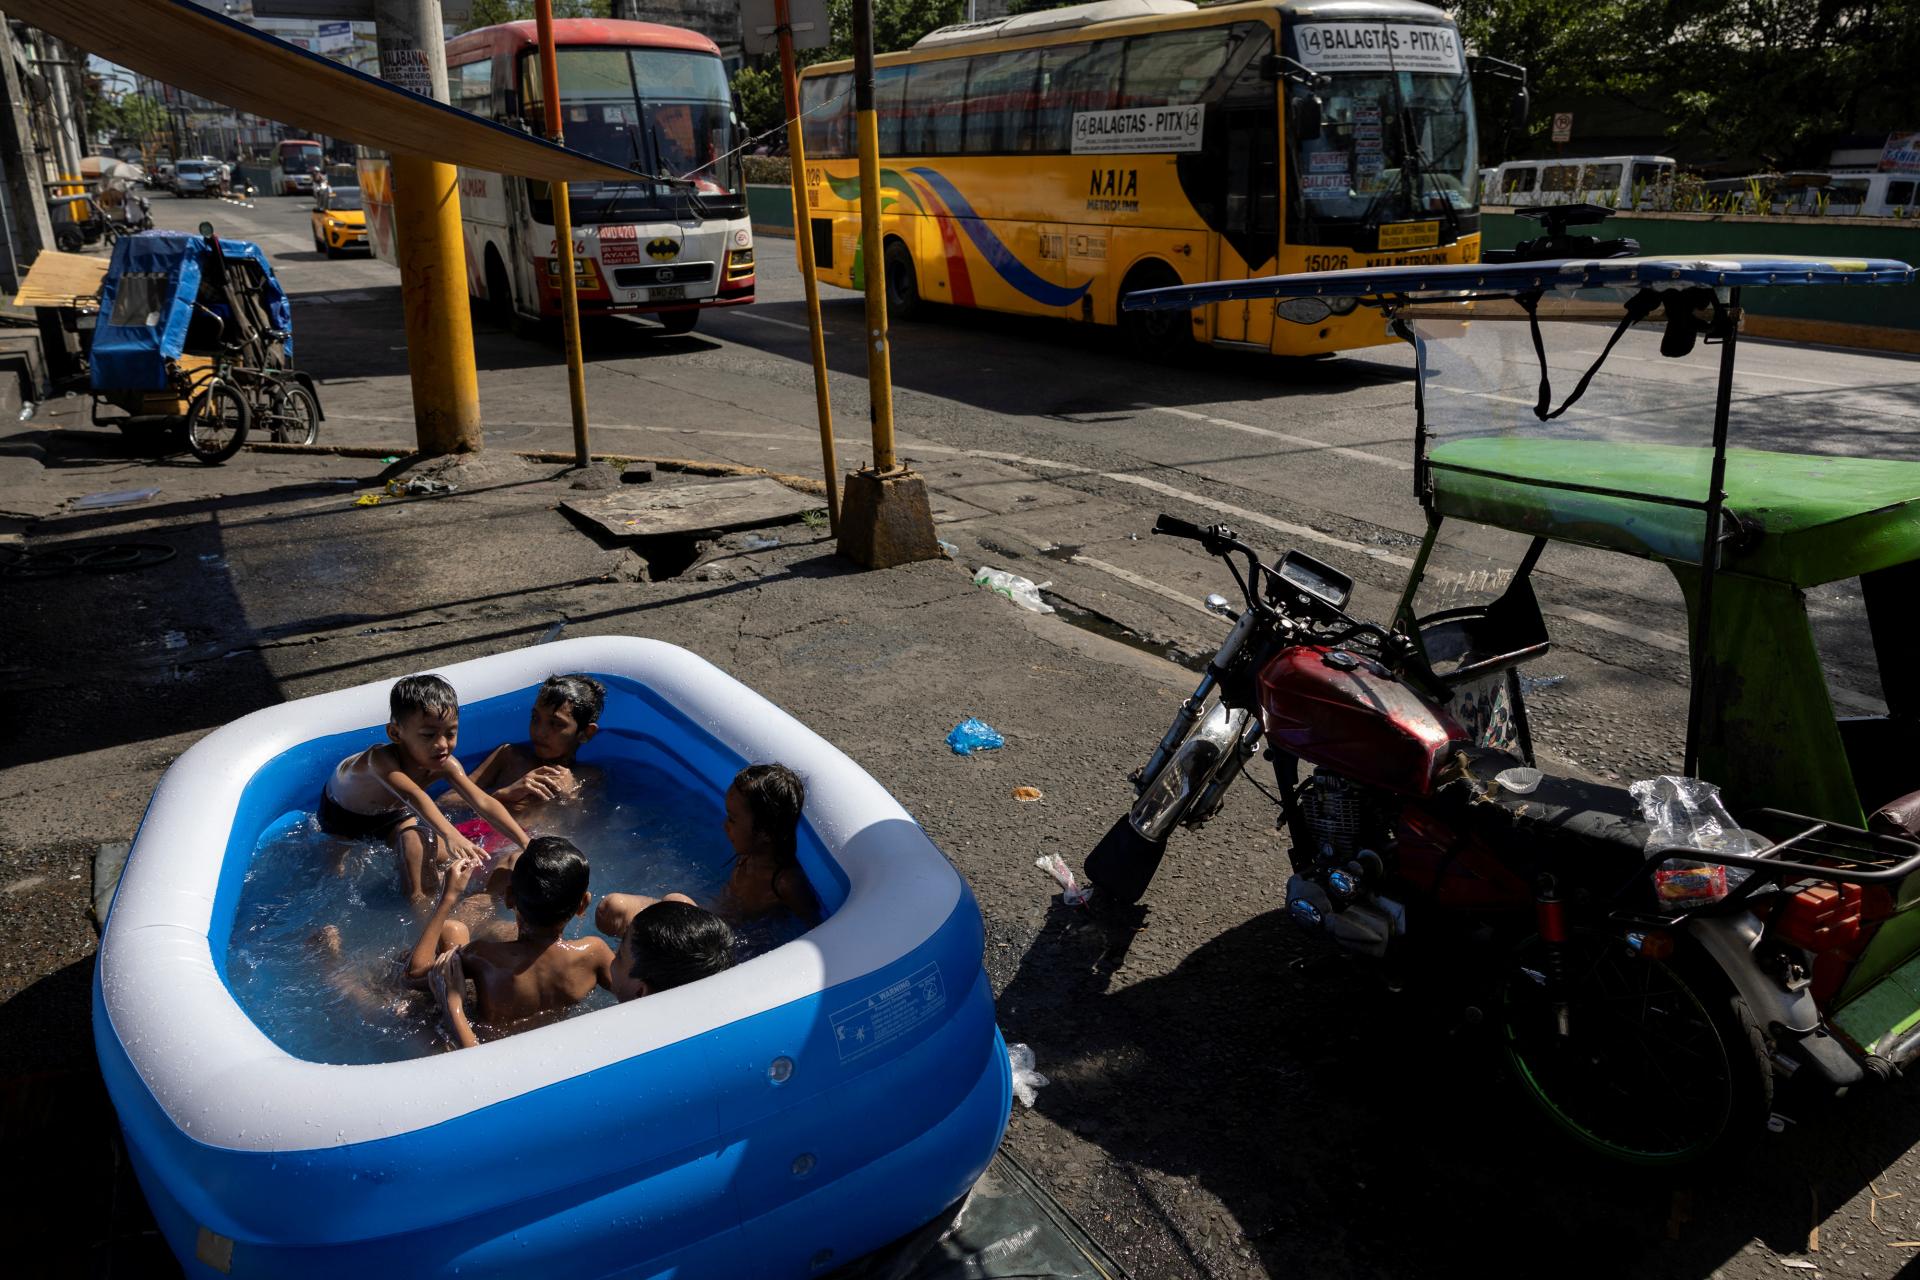 Bazény v uliciach, výpadky elektriny. Juhovýchodnú Áziu drvia rekordné teploty, pred ktorými niet úniku